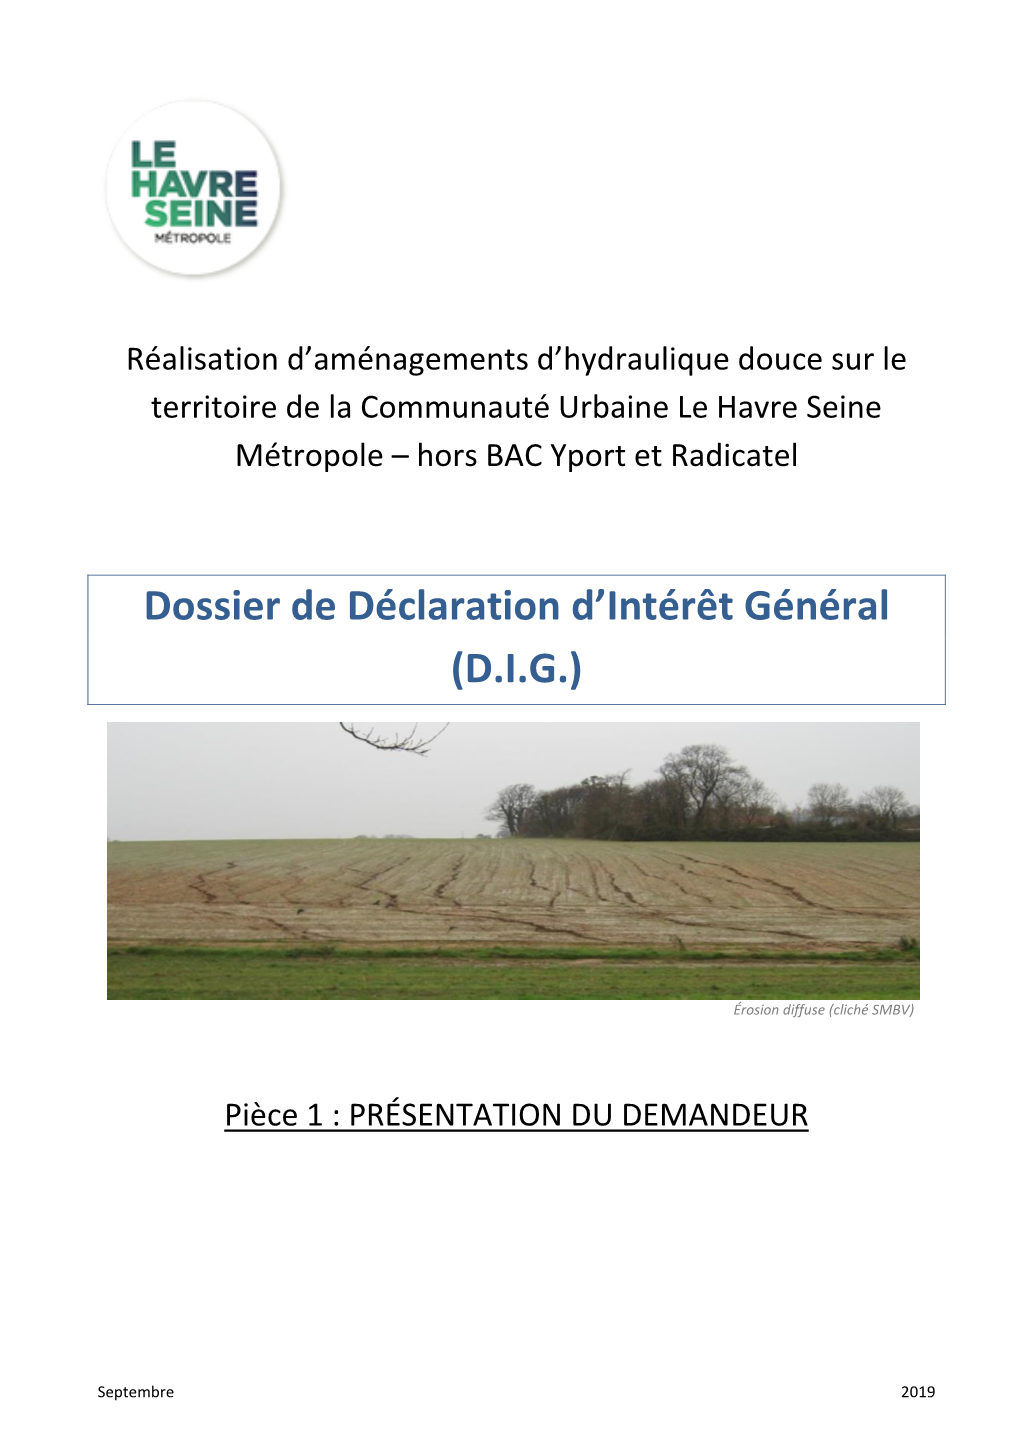 Dossier De Déclaration D'intérêt Général (D.I.G.)